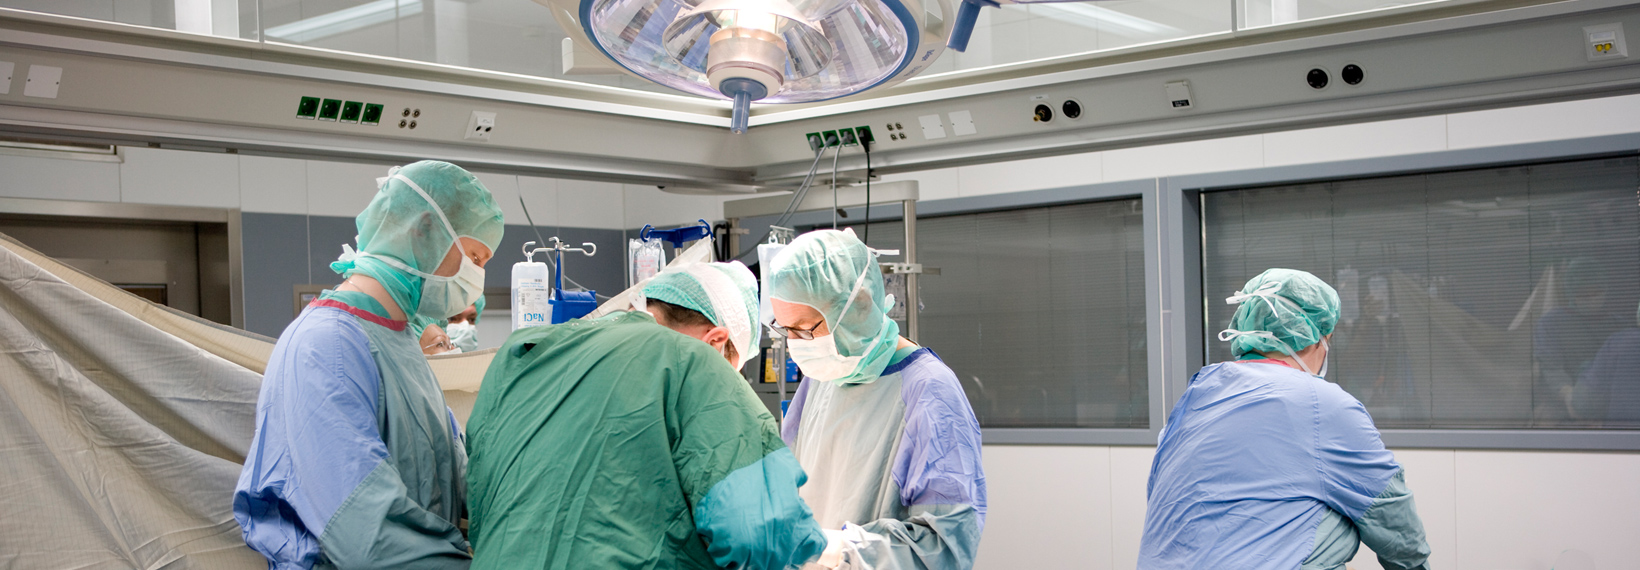 Mehrere Mitarbeiter befinden sich während einer Operation im OP-Saal der Allgemein- und Visceralchirurgie